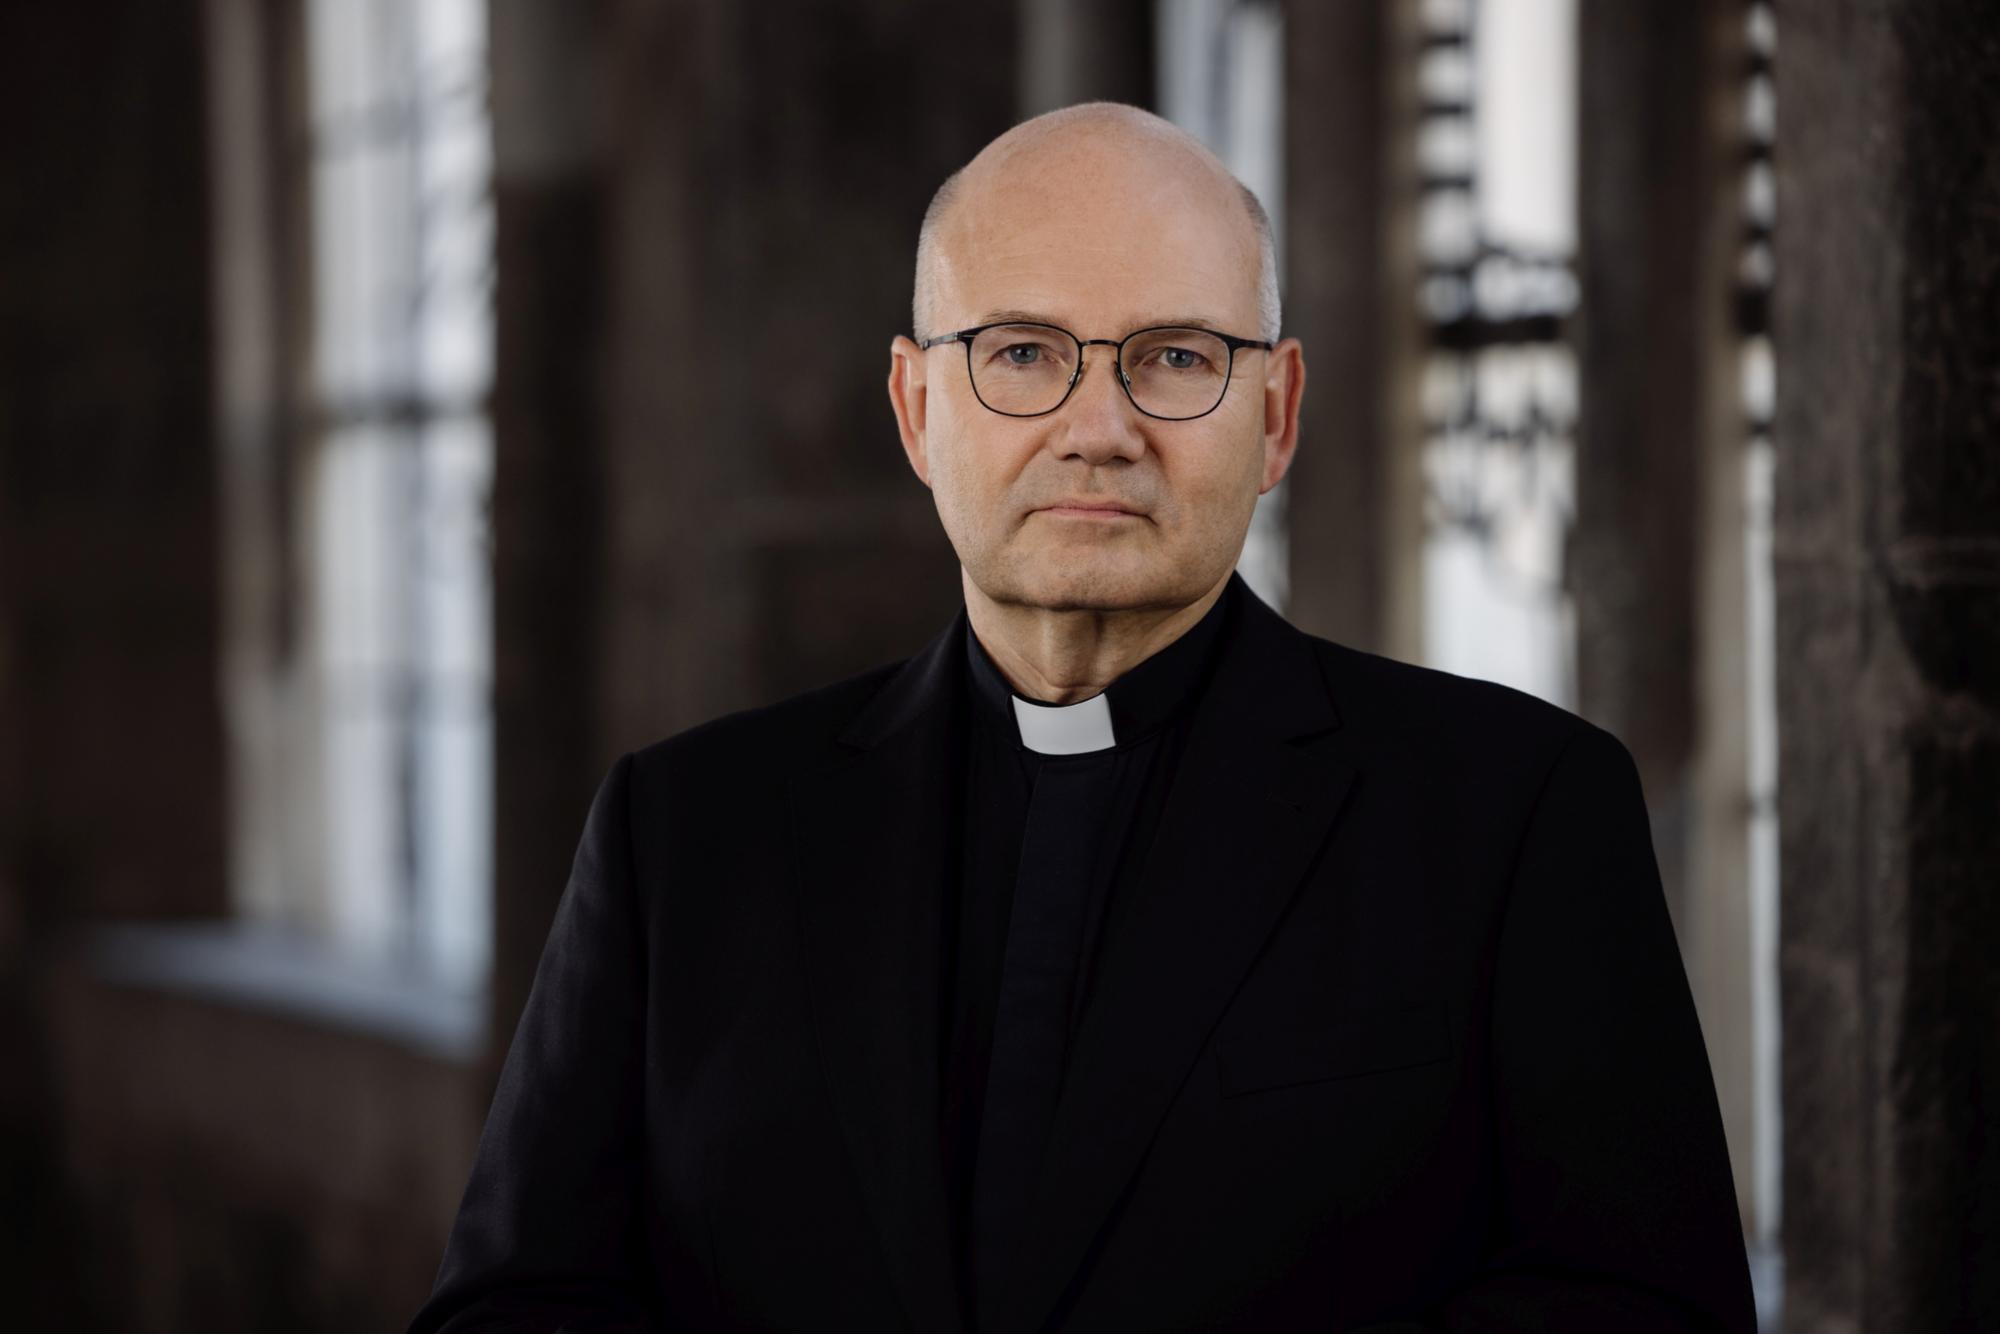 Bischof Dr. Helmut Dieser